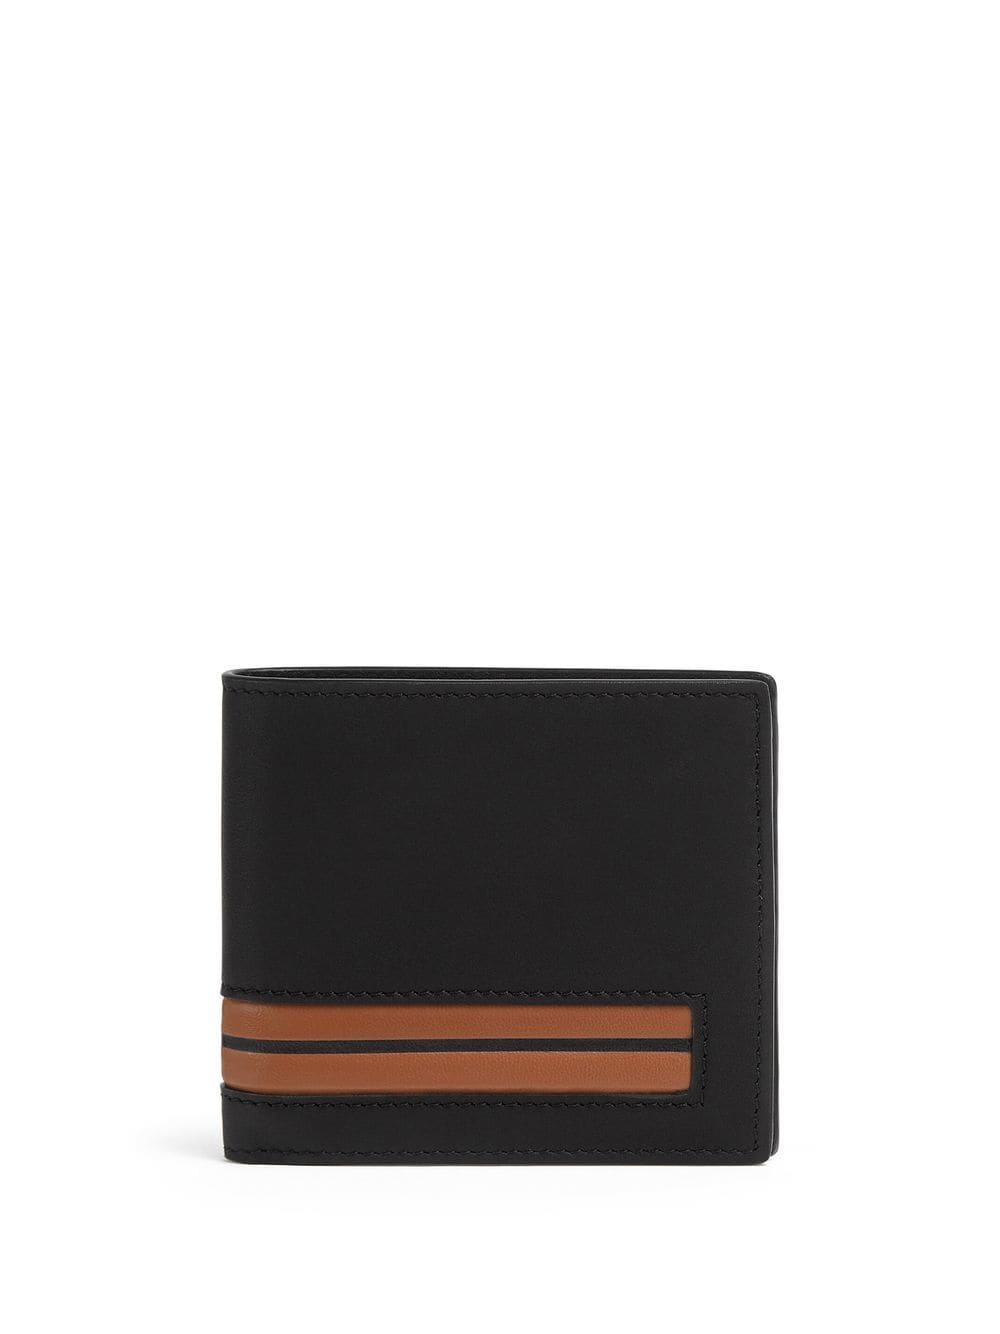 Image 1 of Zegna bi-fold leather wallet